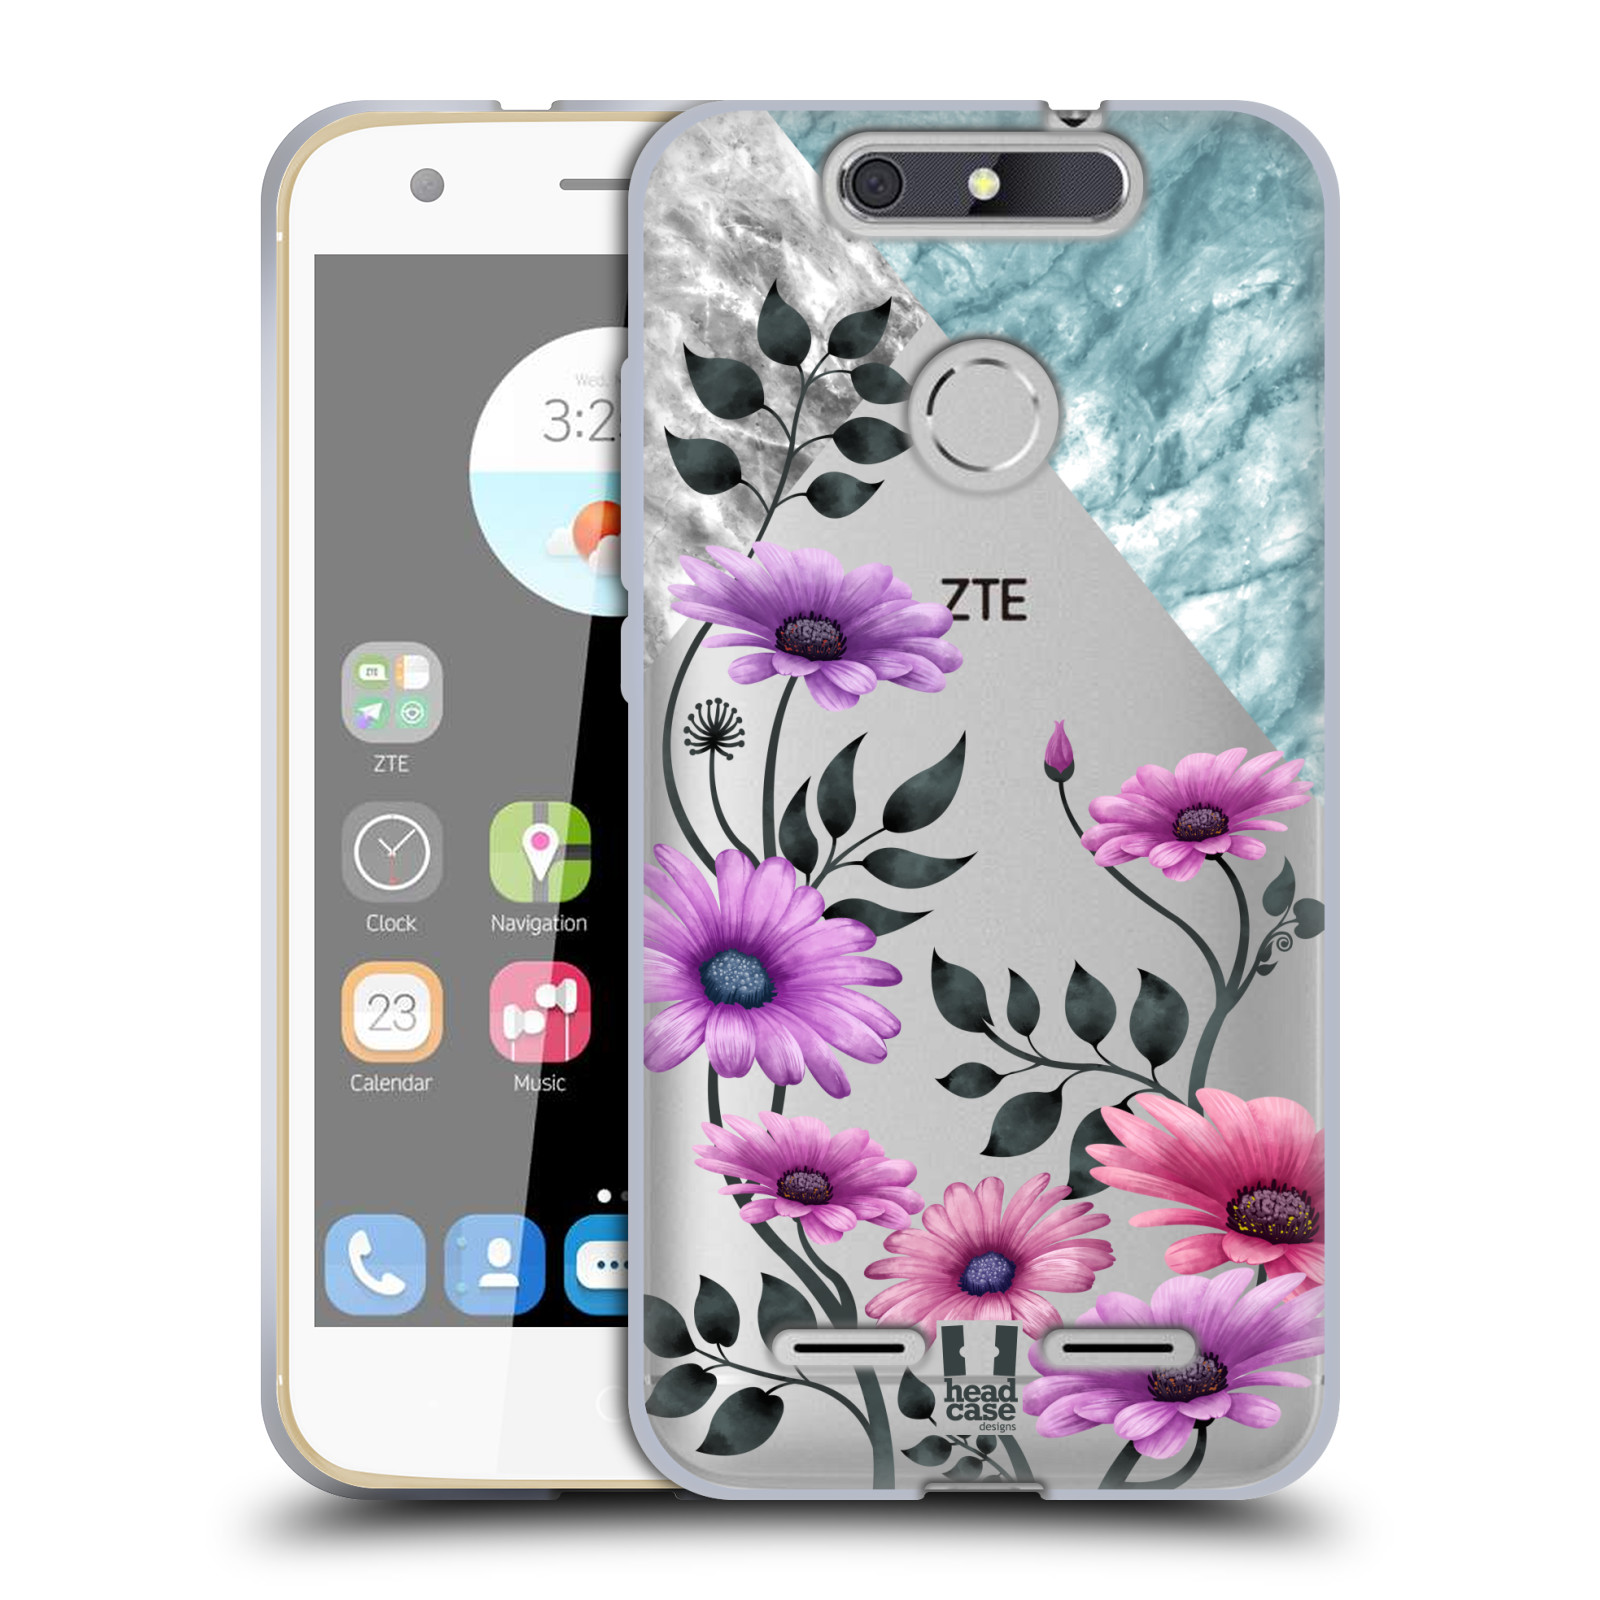 HEAD CASE silikonový obal na mobil ZTE Blade V8 LITE květiny hvězdnice, Aster fialová a modrá